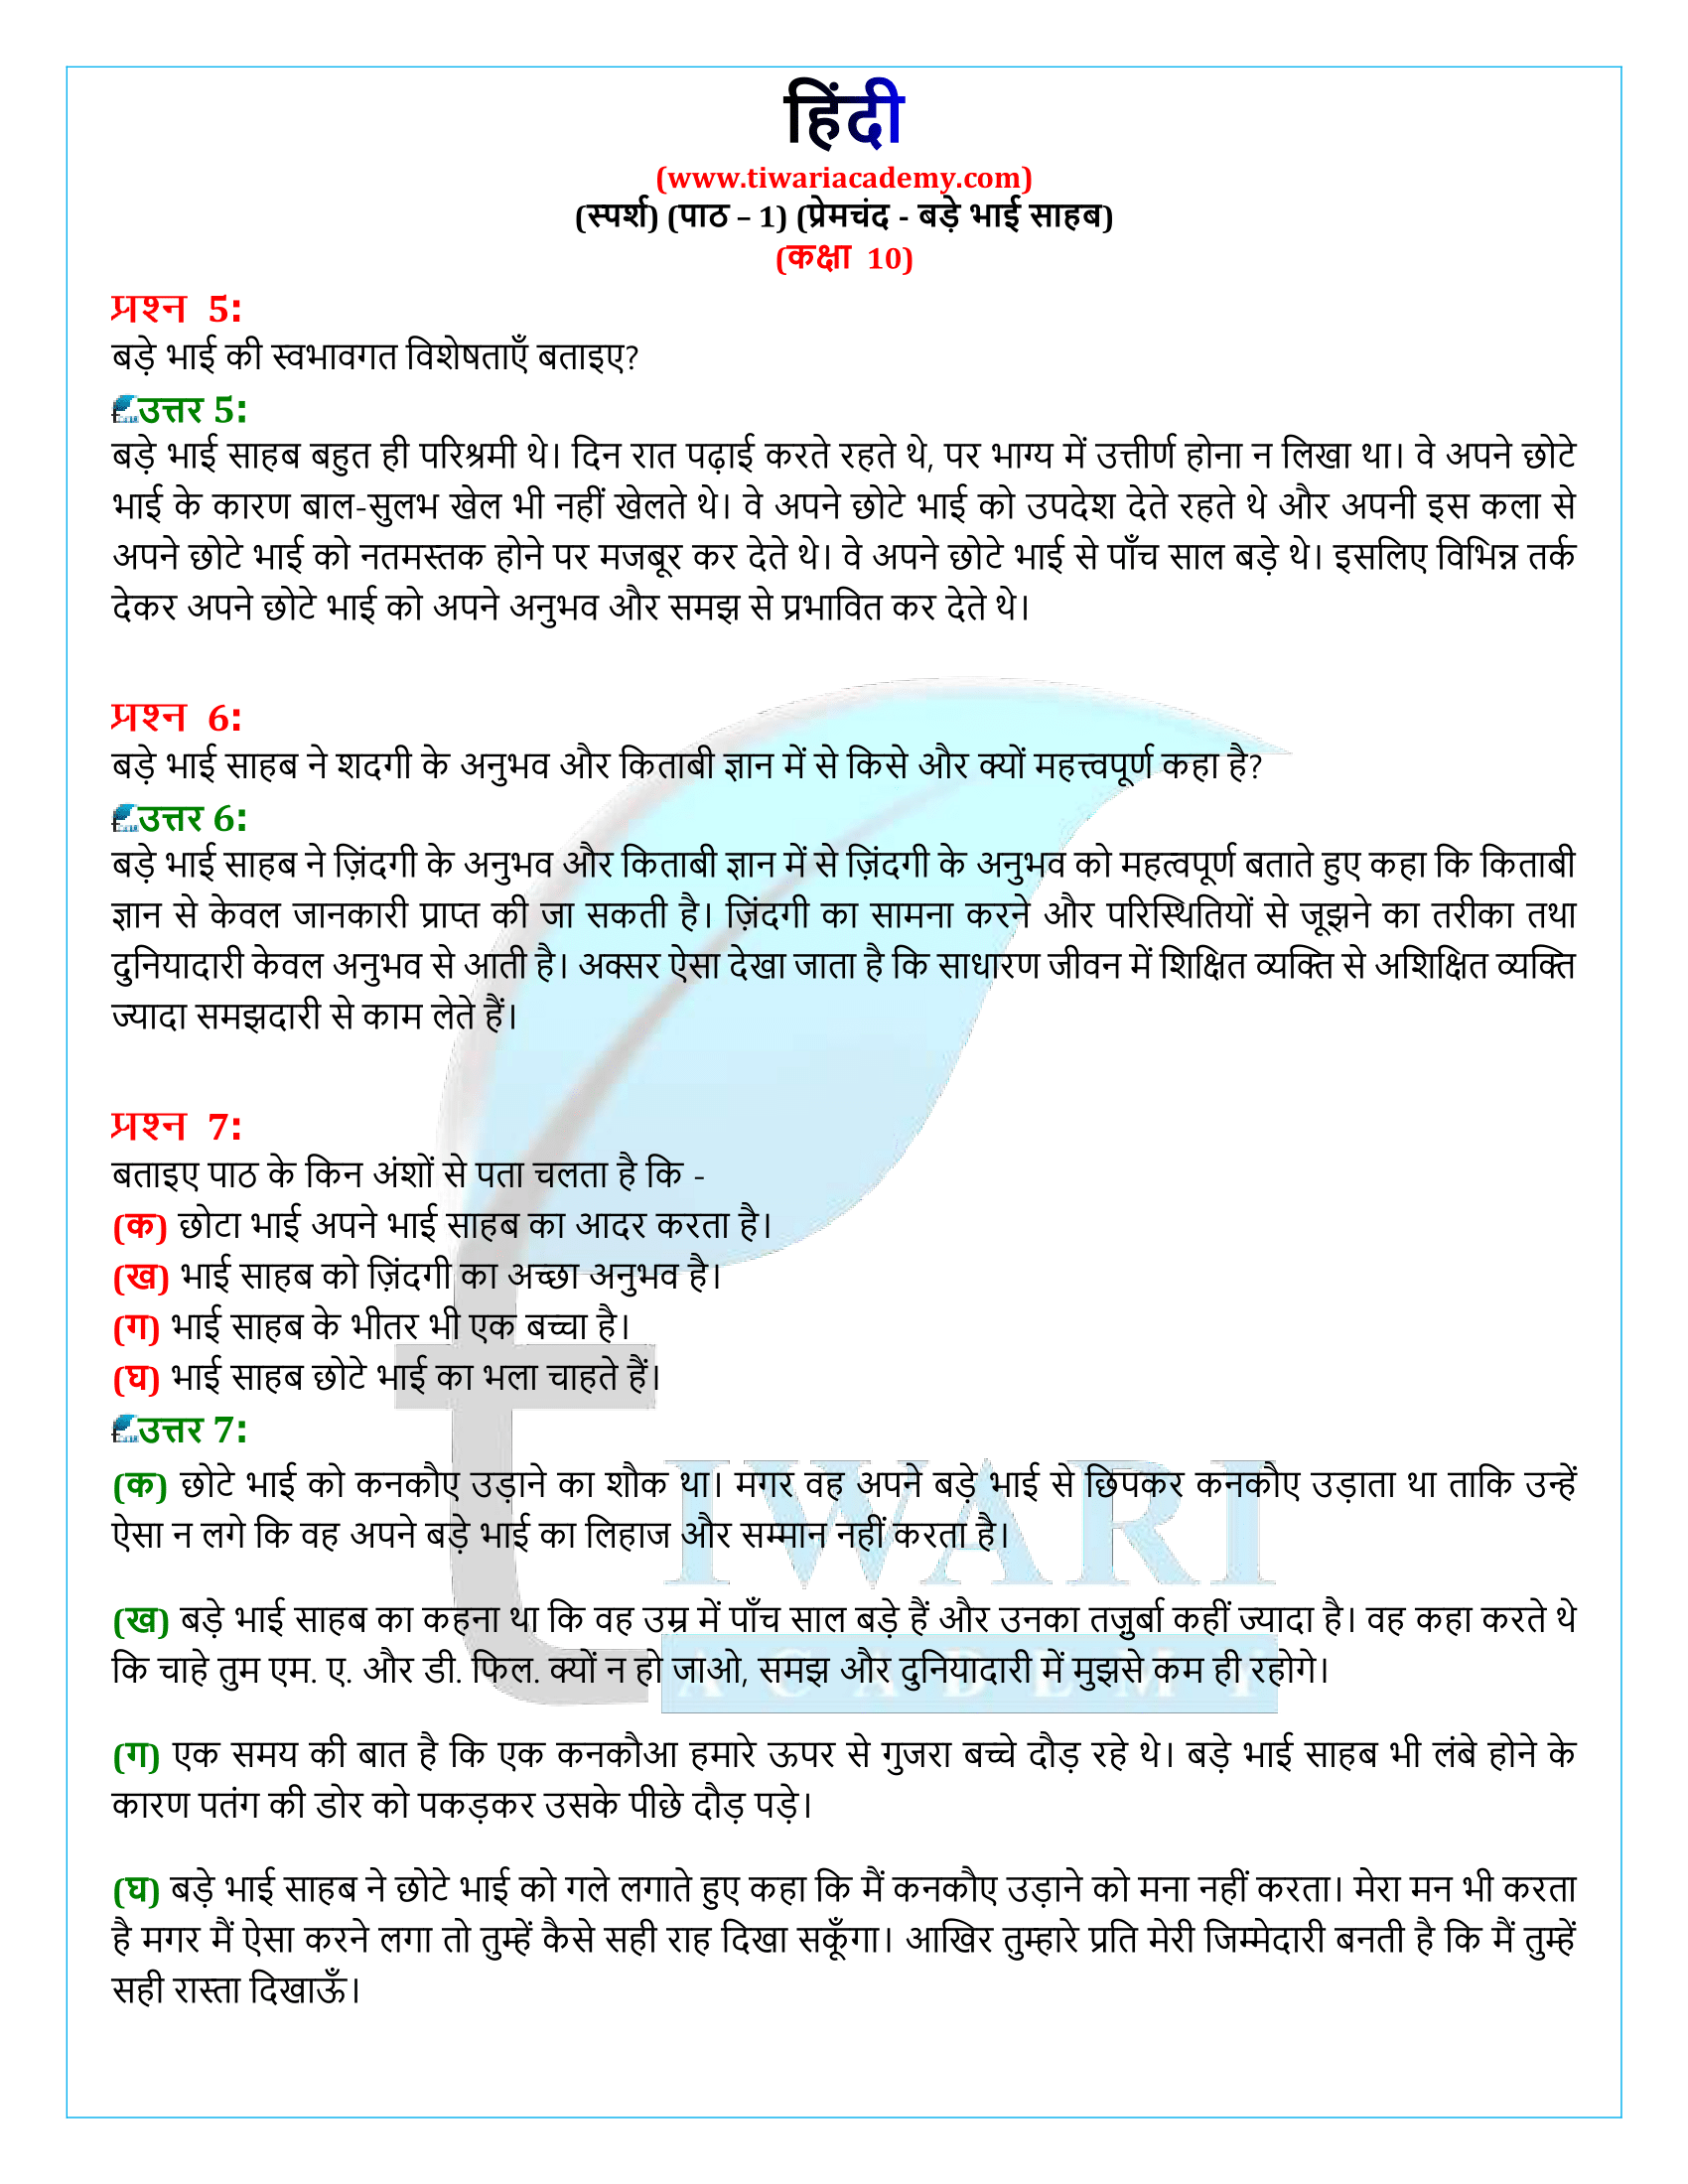 कक्षा 10 हिंदी स्पर्श अध्याय 1 के समाधान